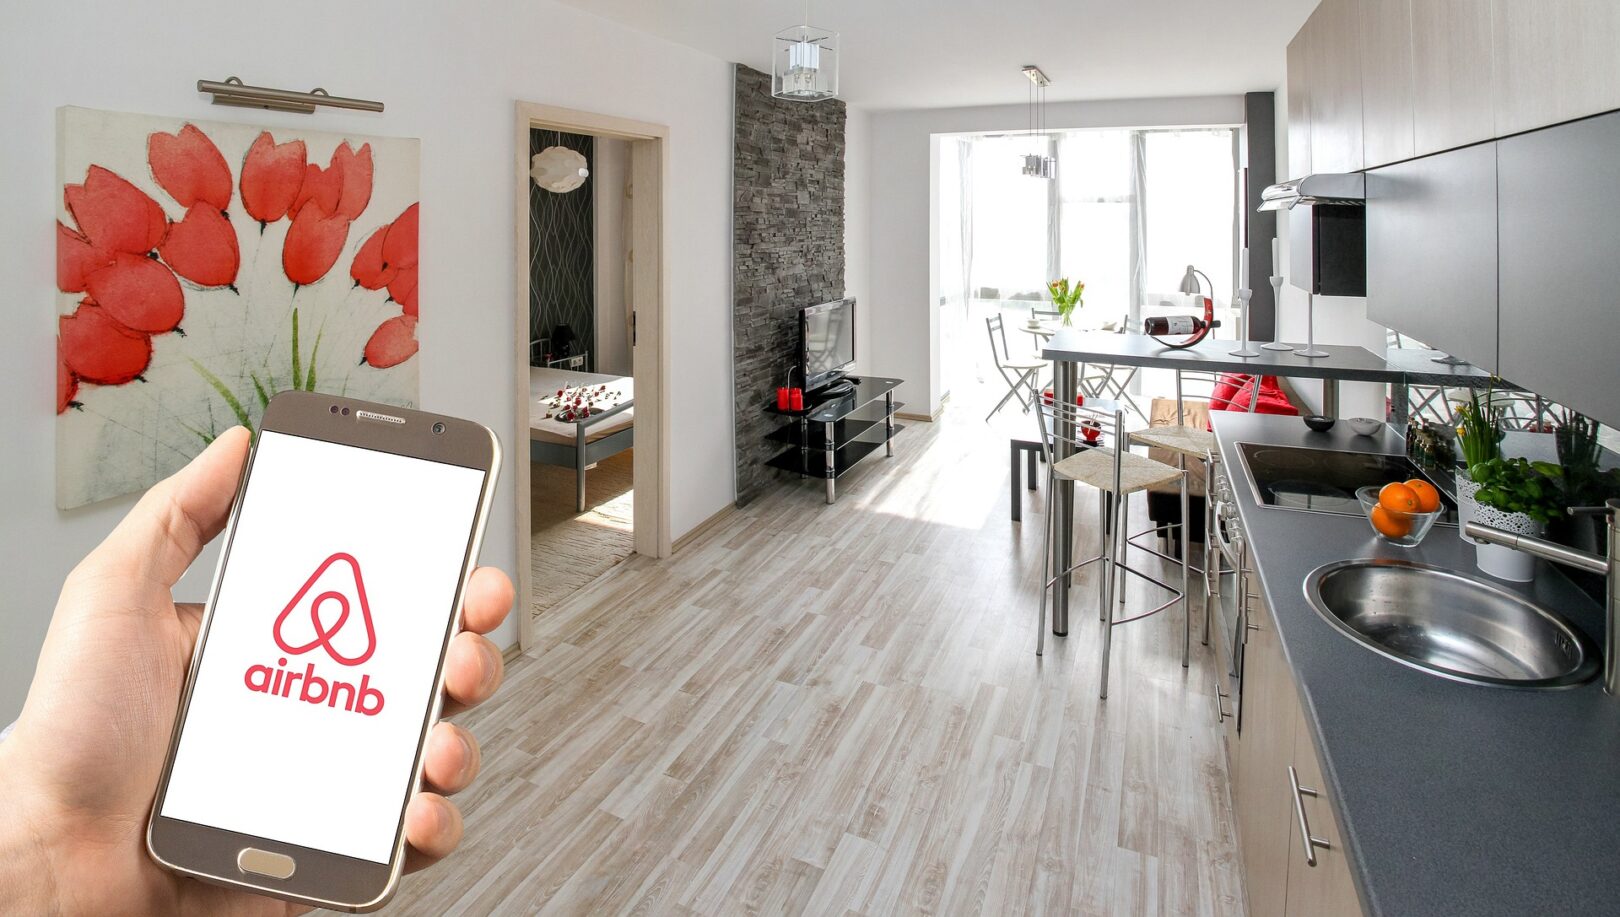 Airbnb & Co.: Frankfurt Recherchiert Im Netz Gegen Illegale Ferienwohnungen